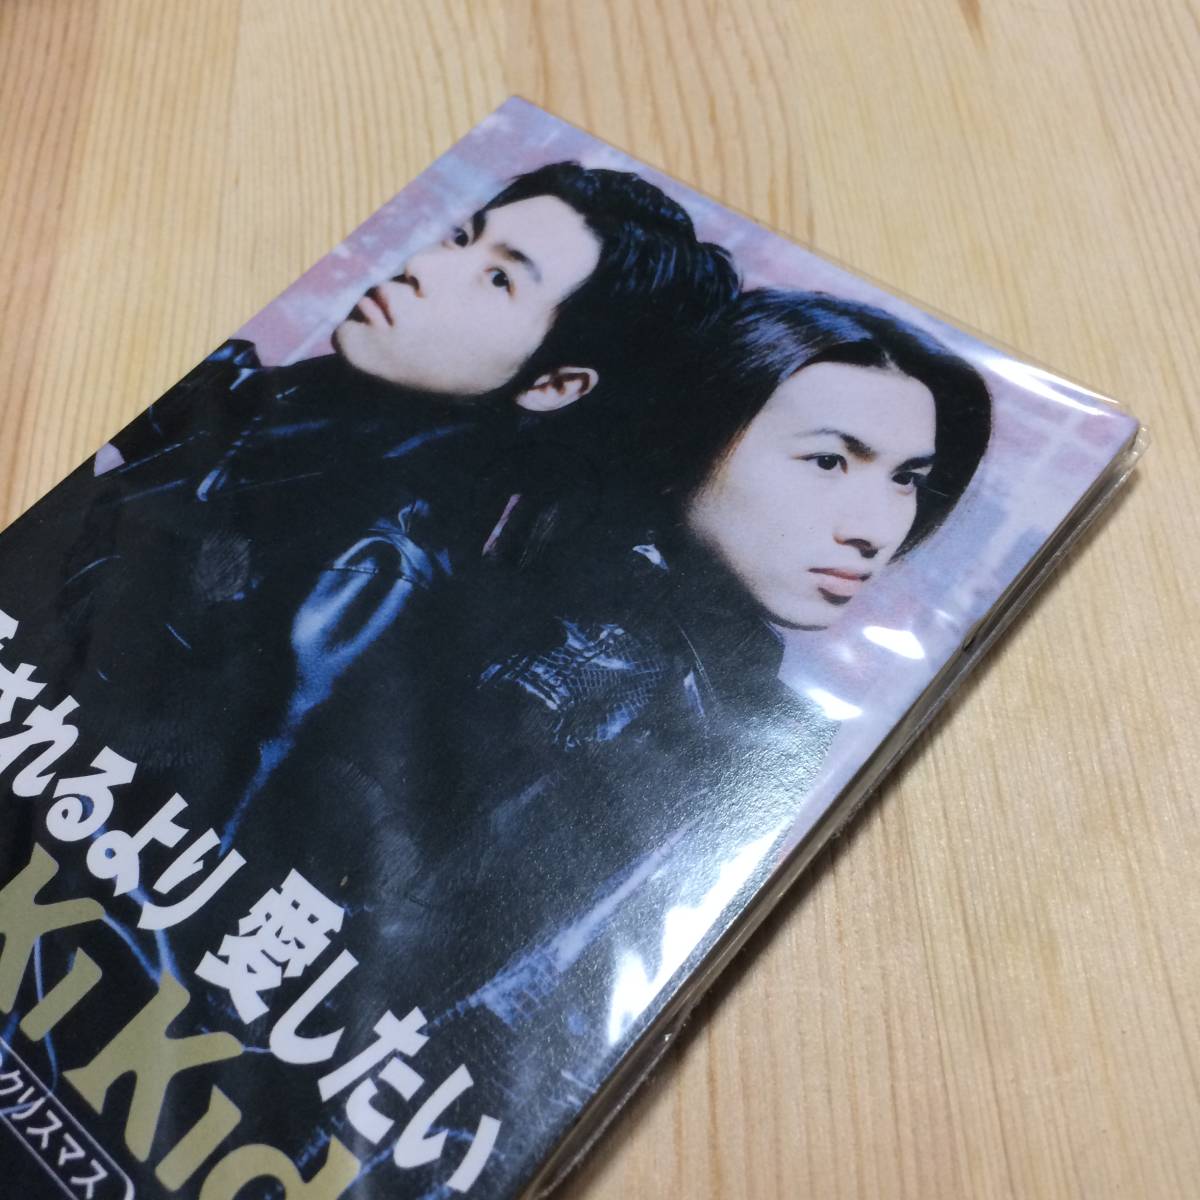  новый товар нераспечатанный Kinki Kids( Doumoto Tsuyoshi * Doumoto Kouichi )[ love быть .. love хотеть сделать ] Kinki Kids CDS 8cm CD одиночный tanzaku CD JPOP песня искривление 